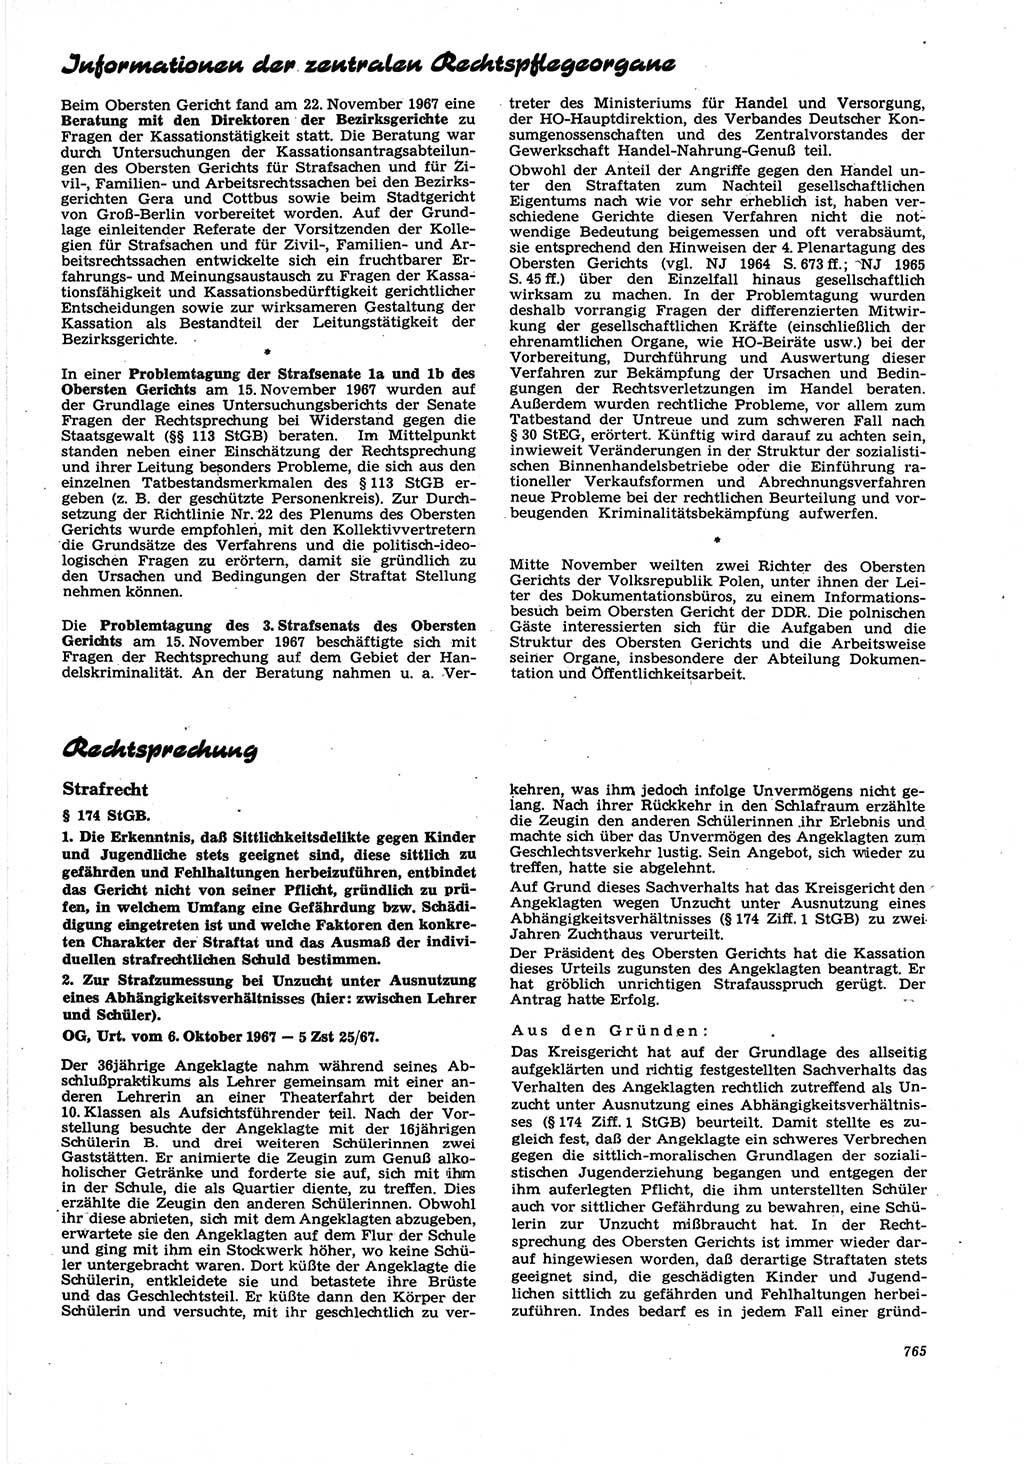 Neue Justiz (NJ), Zeitschrift für Recht und Rechtswissenschaft [Deutsche Demokratische Republik (DDR)], 21. Jahrgang 1967, Seite 765 (NJ DDR 1967, S. 765)